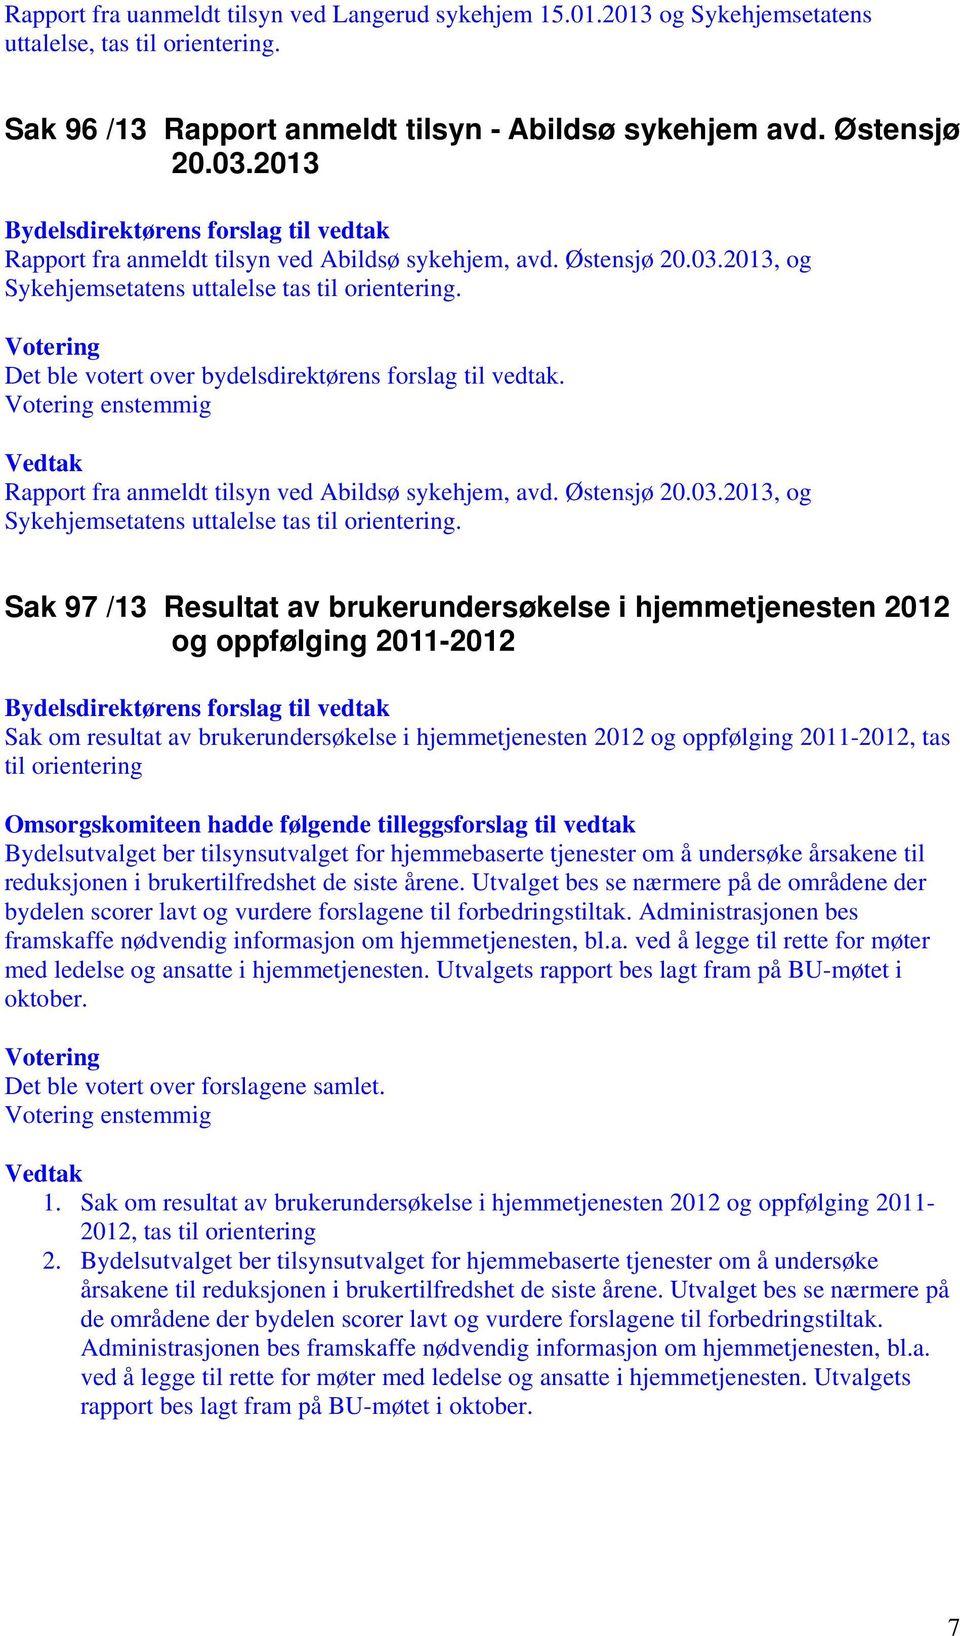 Rapport fra anmeldt tilsyn ved Abildsø sykehjem, avd. Østensjø 20.03.2013, og Sykehjemsetatens uttalelse tas til orientering.